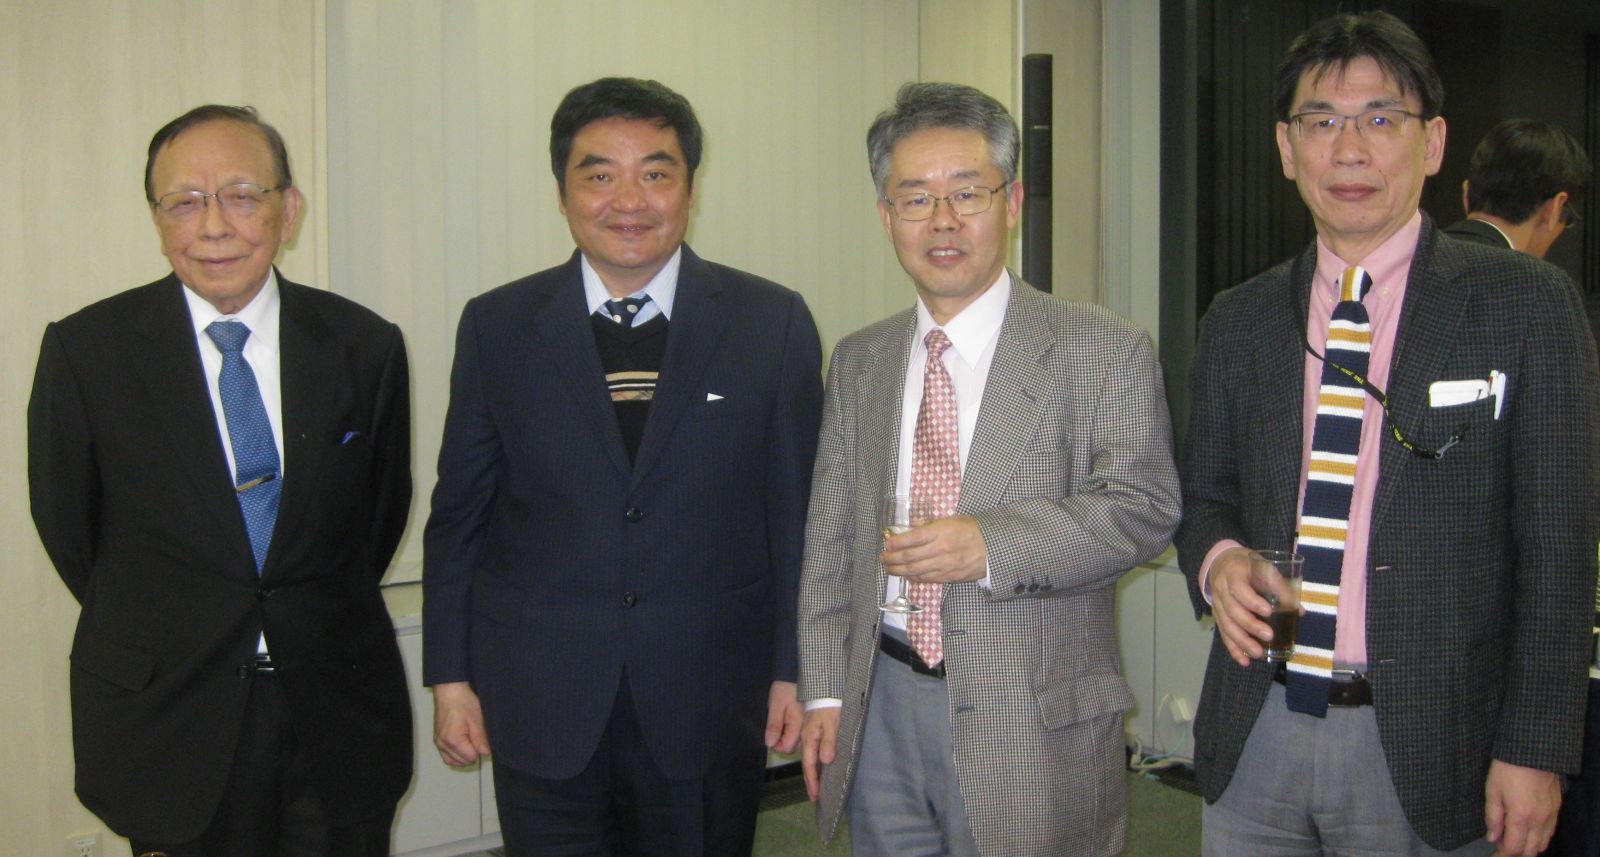 牛道明主任 Dau-ming niu ; Niu DM 受邀，在日本巡迴演講 有關法布瑞氏症 (Fabry Disease) 的相關資訊與治療方式。